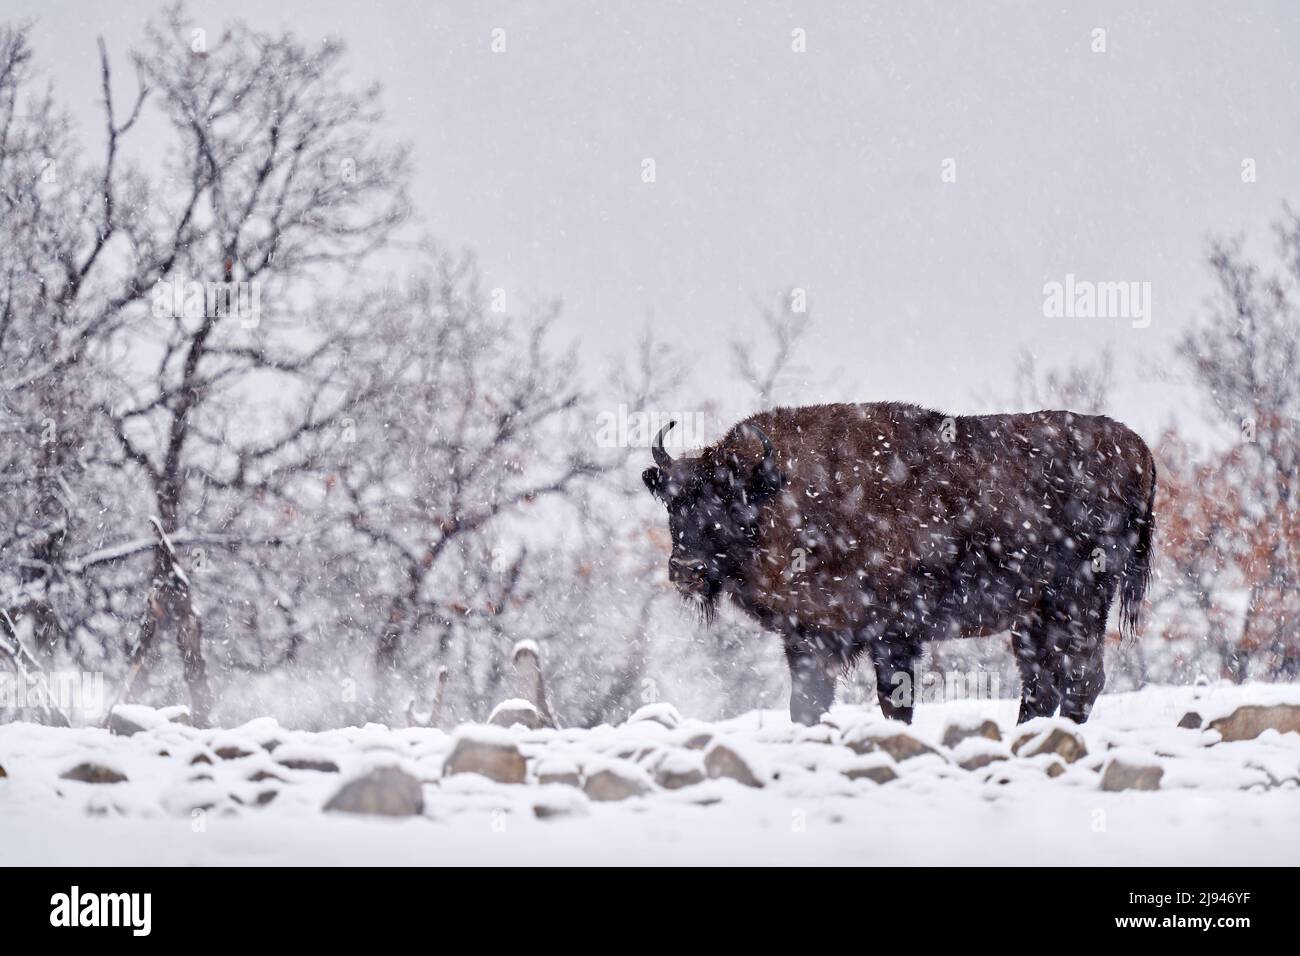 Bison im Winterschneehalde, neblige Szene mit großen braunen Tieren im Naturlebensraum, kaltes Wetter, Studen Kladenec, Ostrhodopen, Bulgarien. Schnee Stockfoto